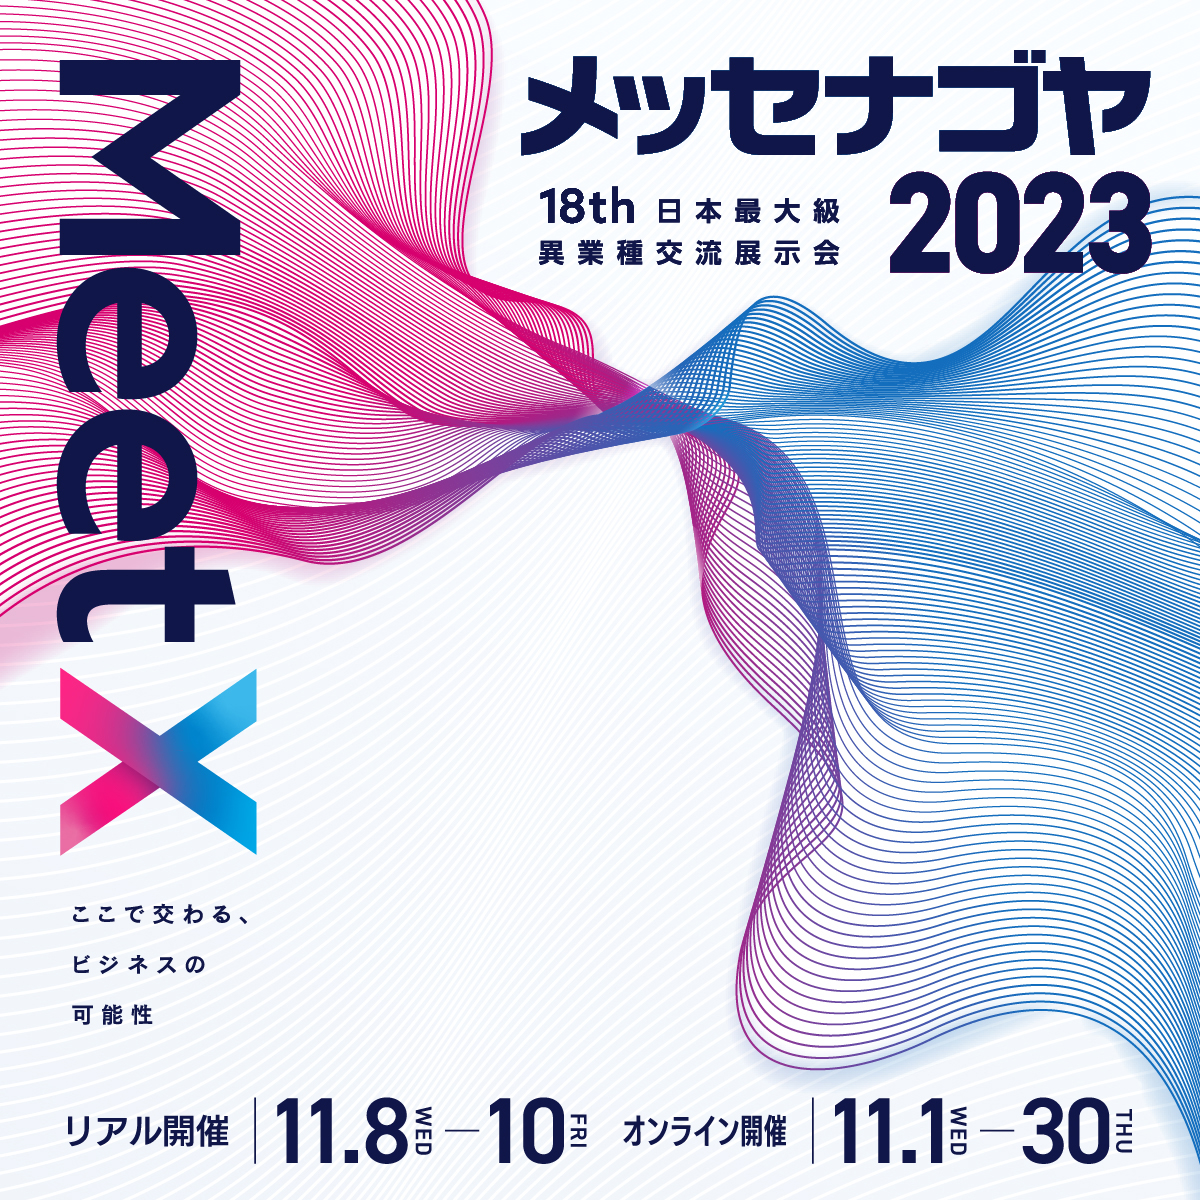 日本最大級異業種交流展示会「メッセナゴヤ2023」に出展します